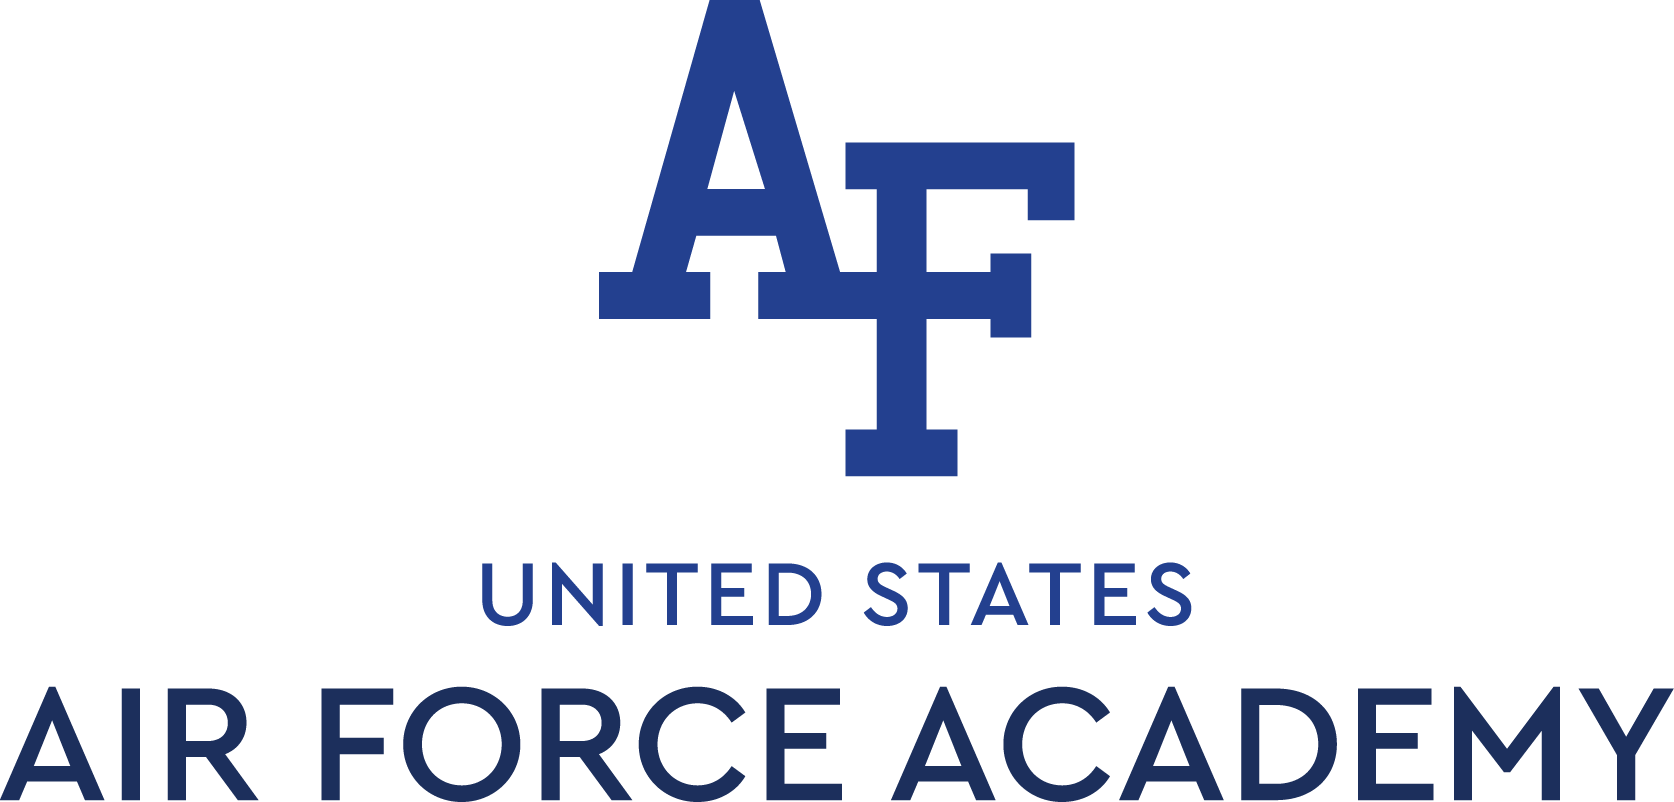 Air Force Academy Logo - Air Force Academy Art